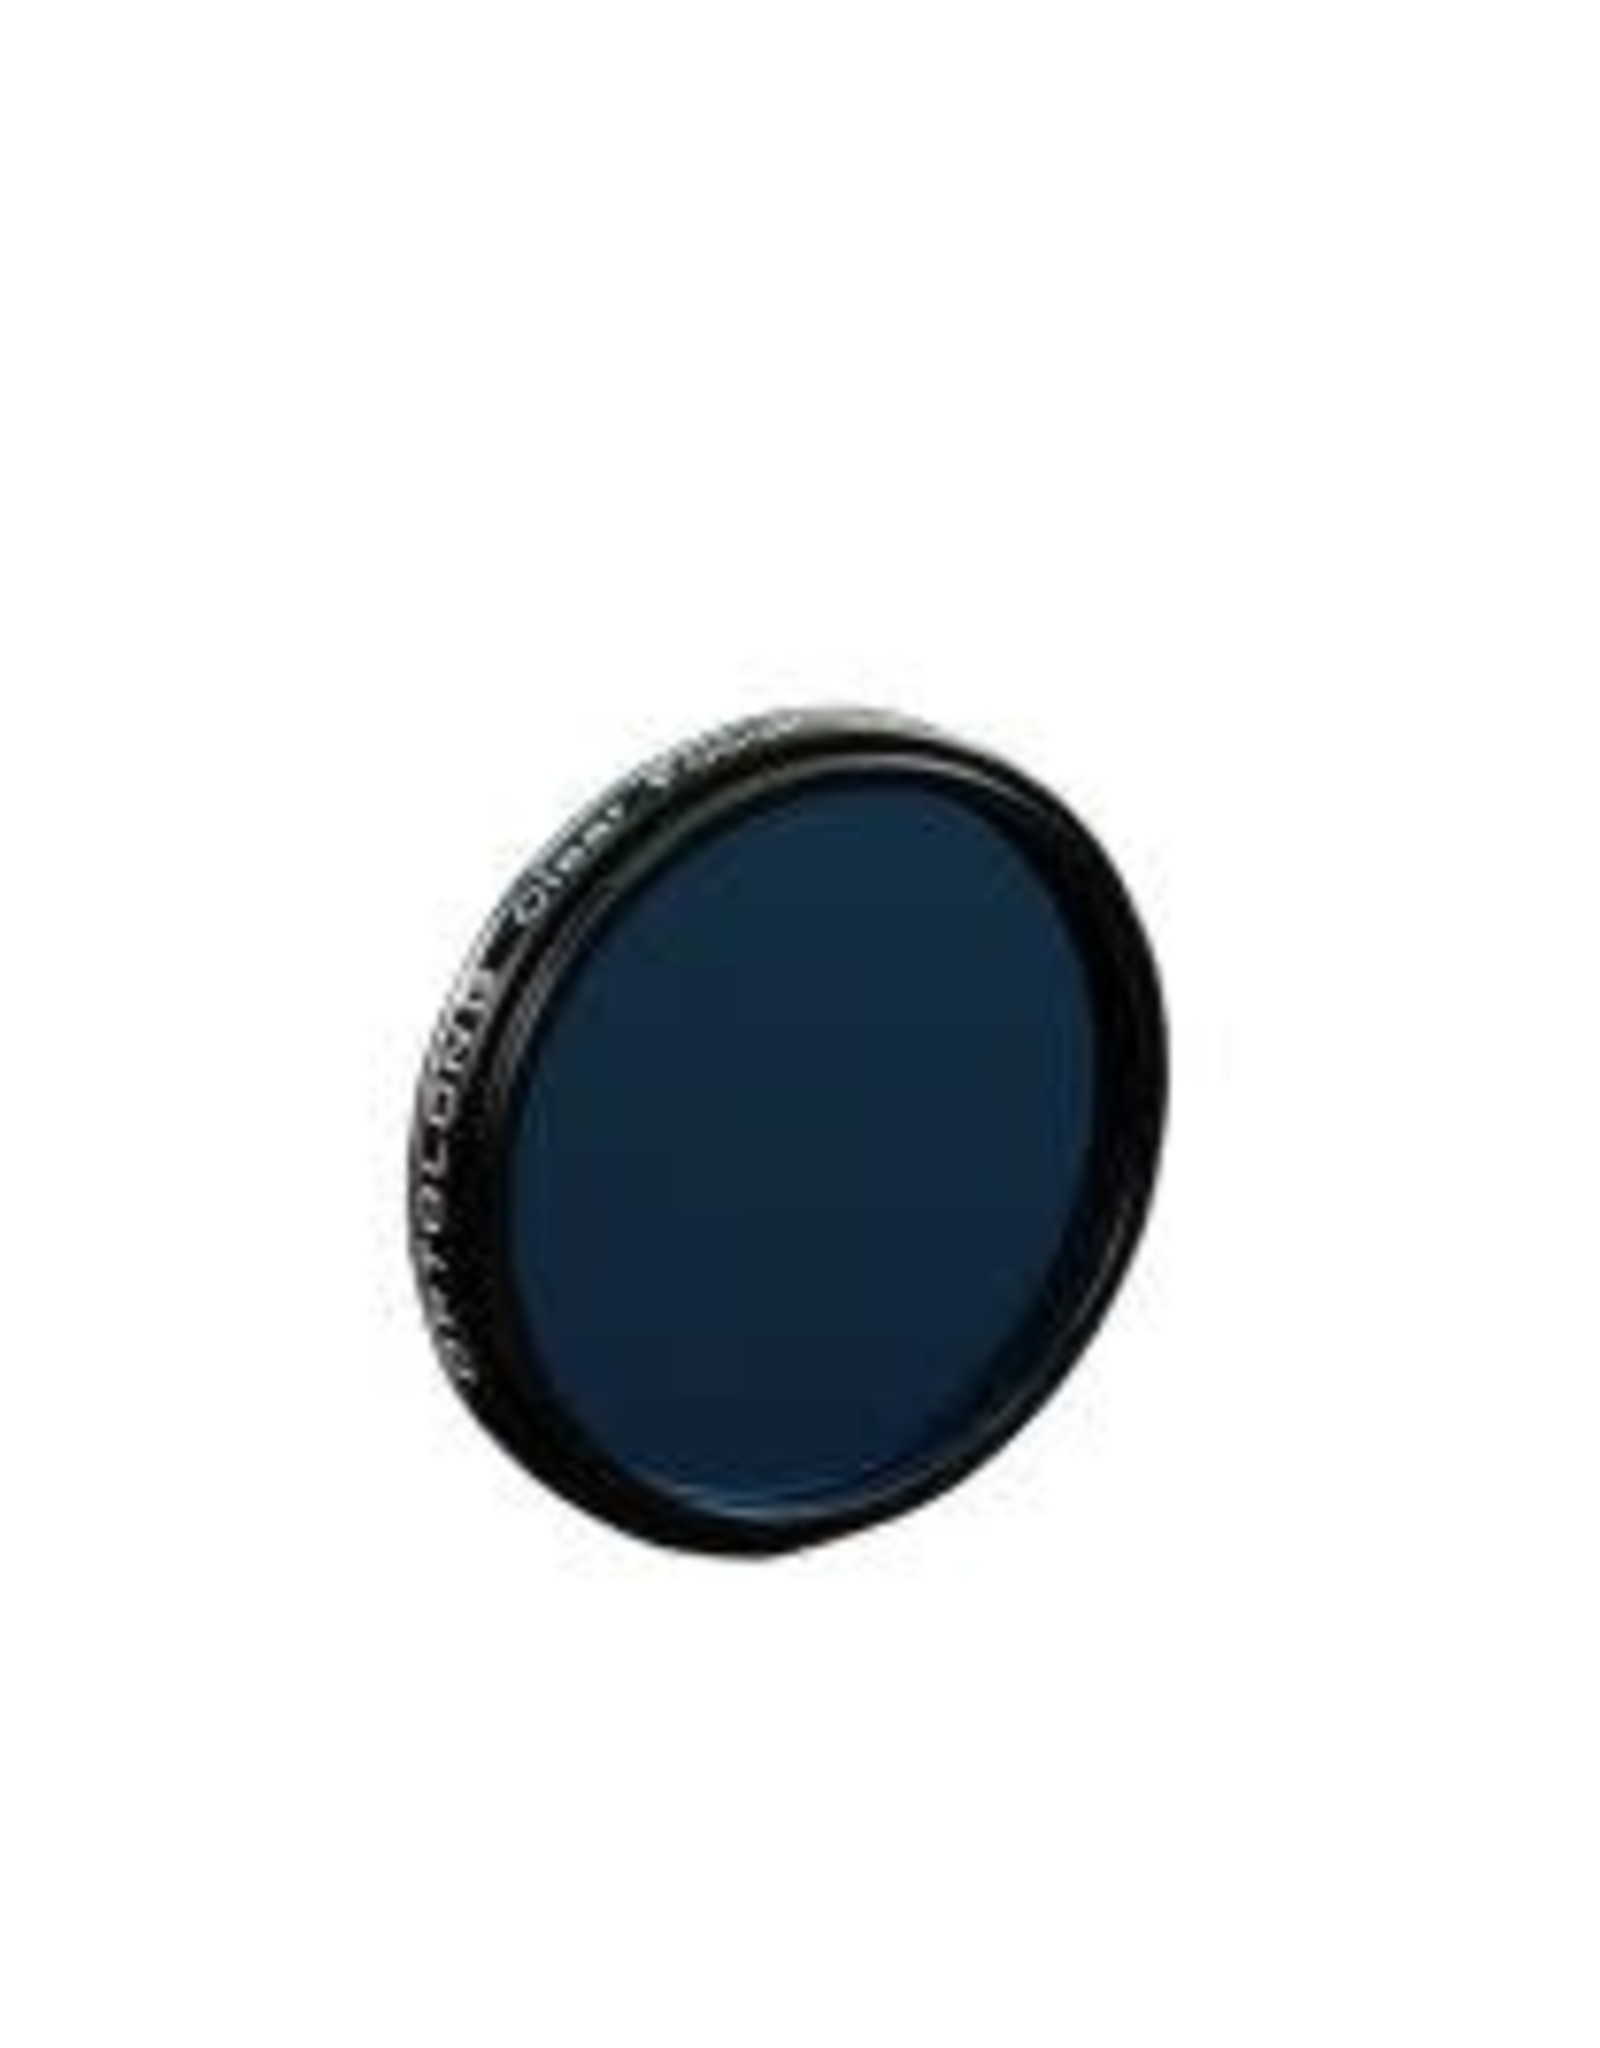 Optolong Optolong Clear Focusing Filter - 1.25" Mounted - CFF-125